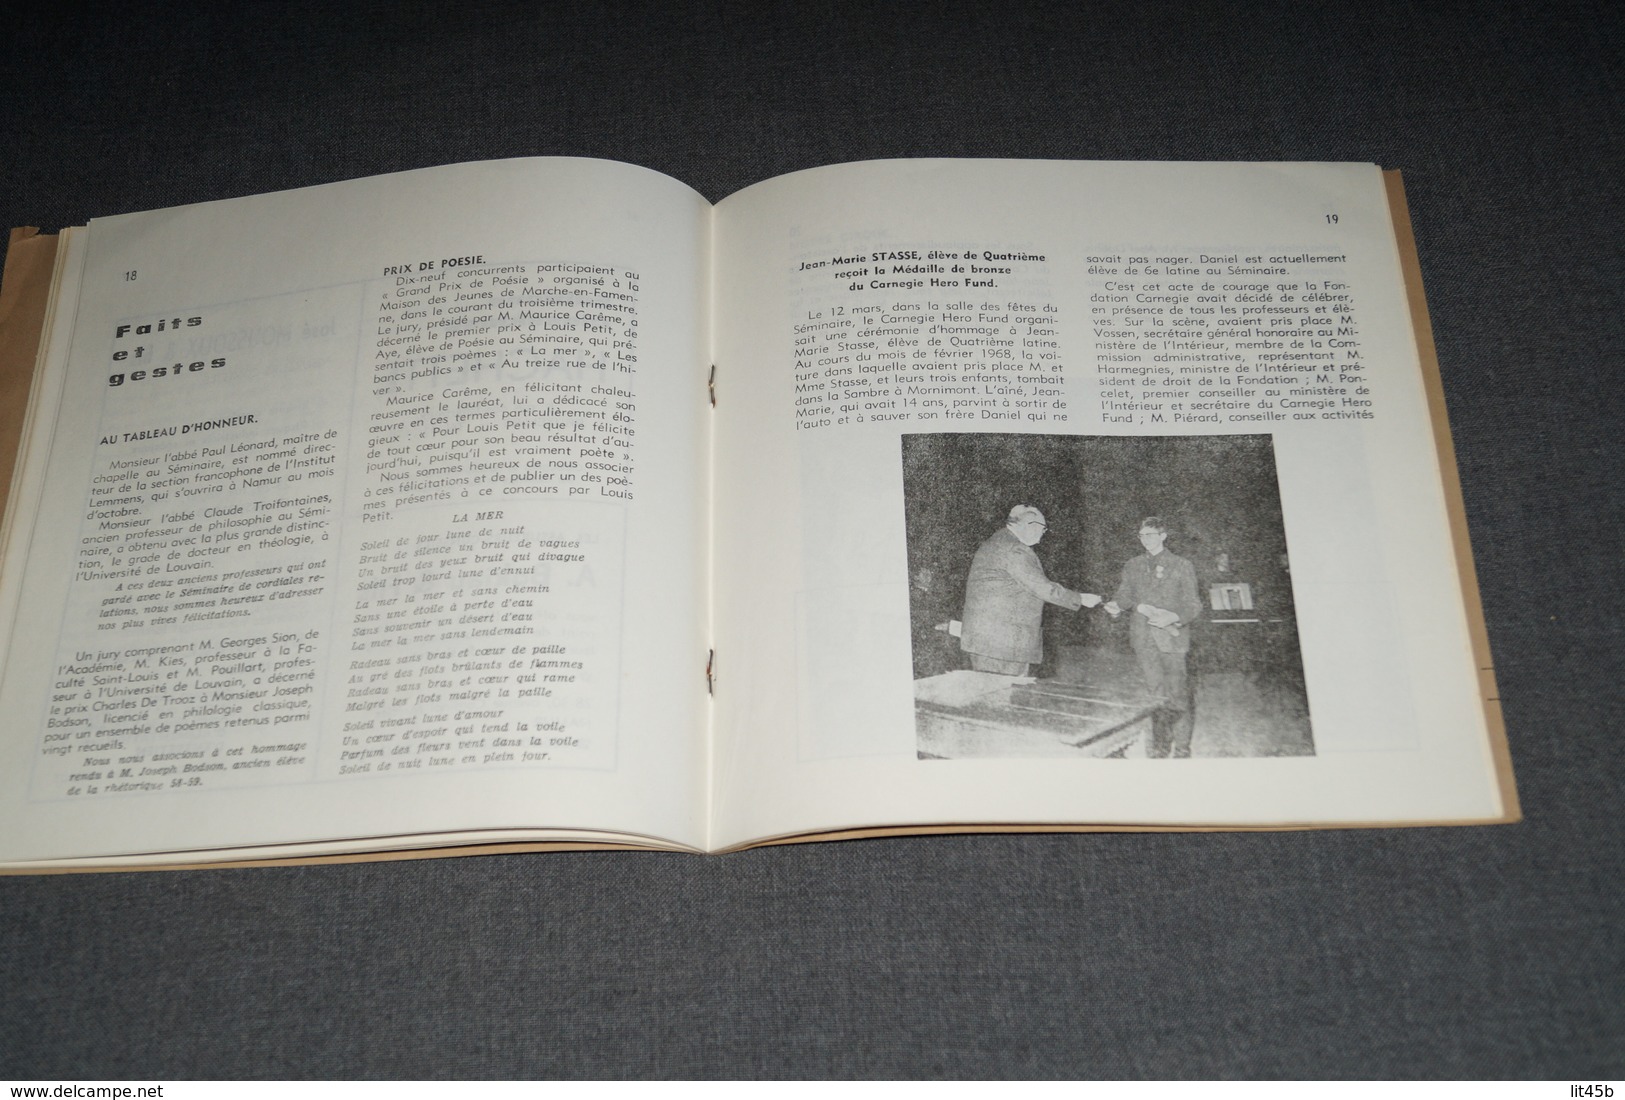 ouvrage Floreffe bulletin des anciens Juillet 1969 ,complet 34 pages,20,5 Cm. sur 19,5 Cm.